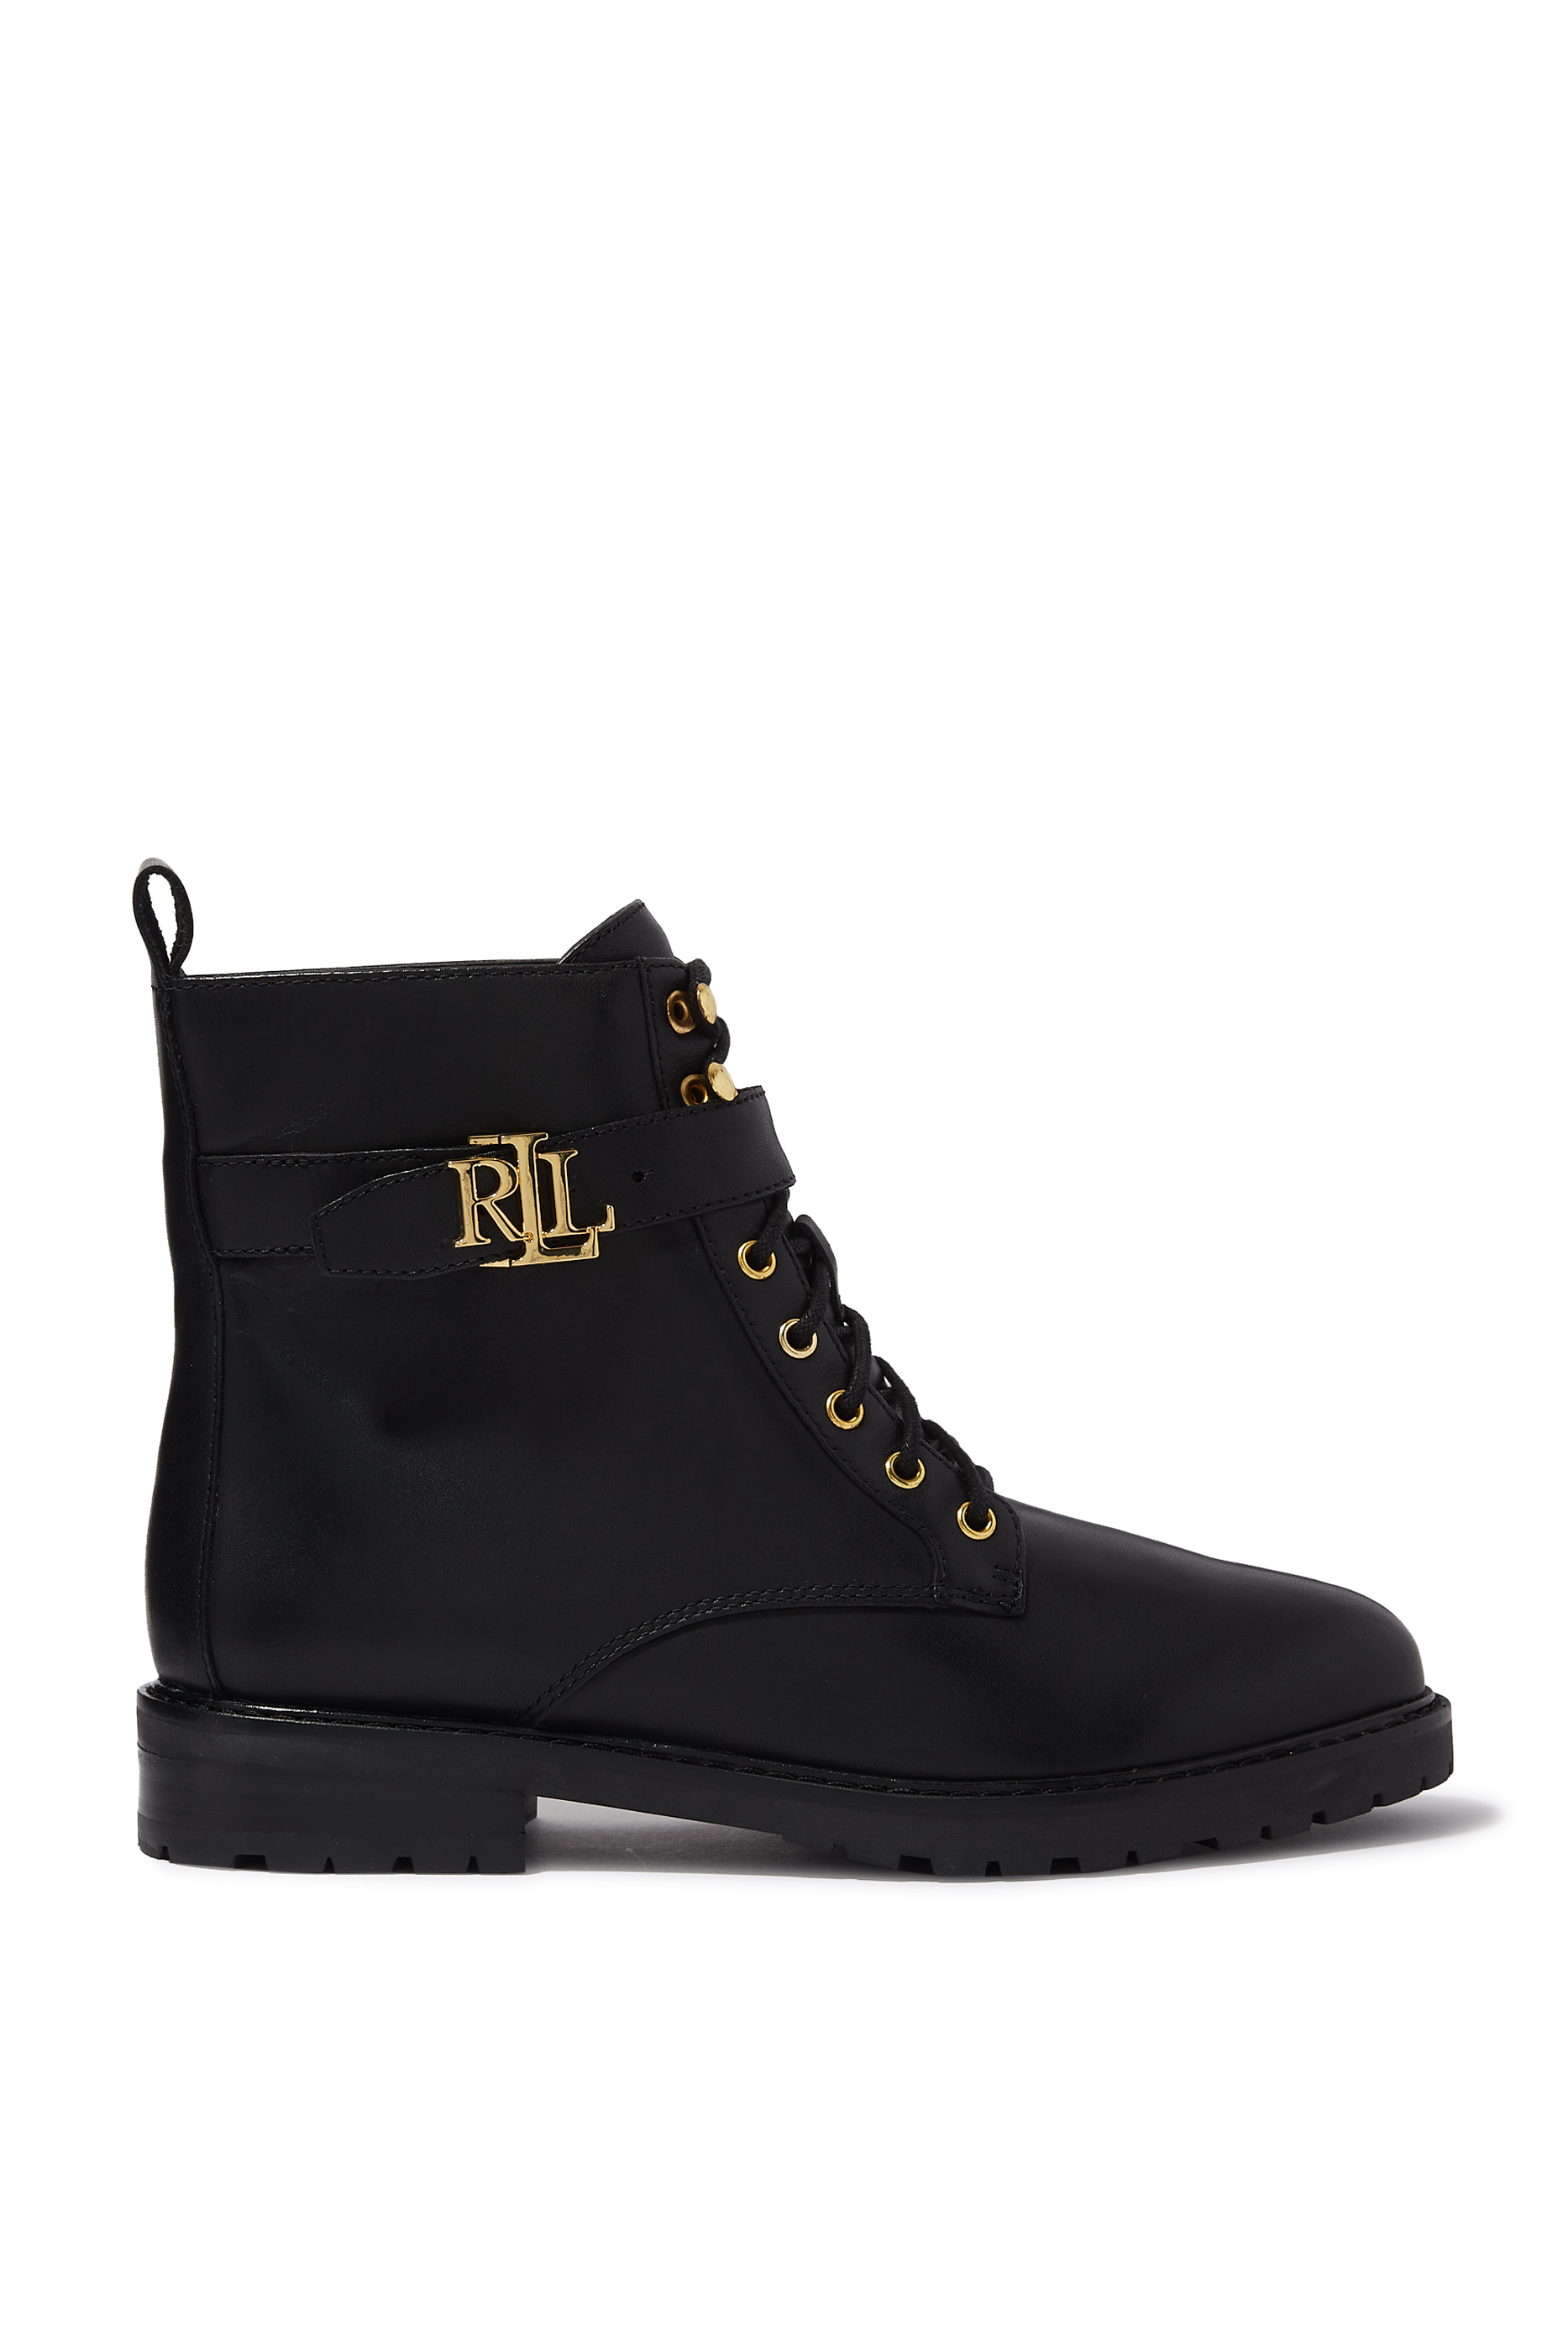 Buy Lauren Ralph Lauren Elridge Leather Boots - Womens for AED 700.00 ...